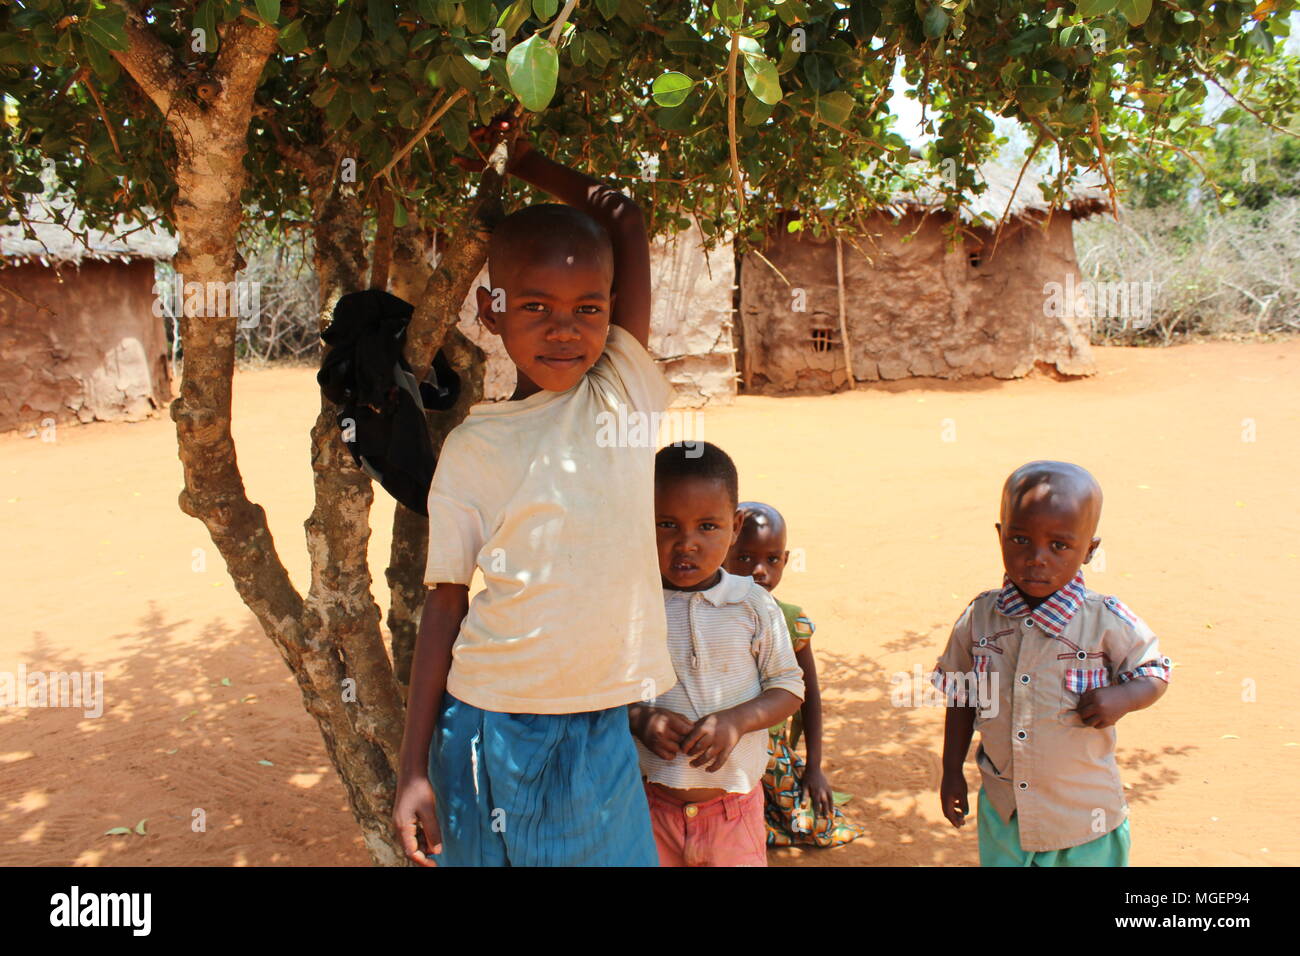 Sourire d'enfants africains dépeint sous un arbre dans un petit village africain Banque D'Images